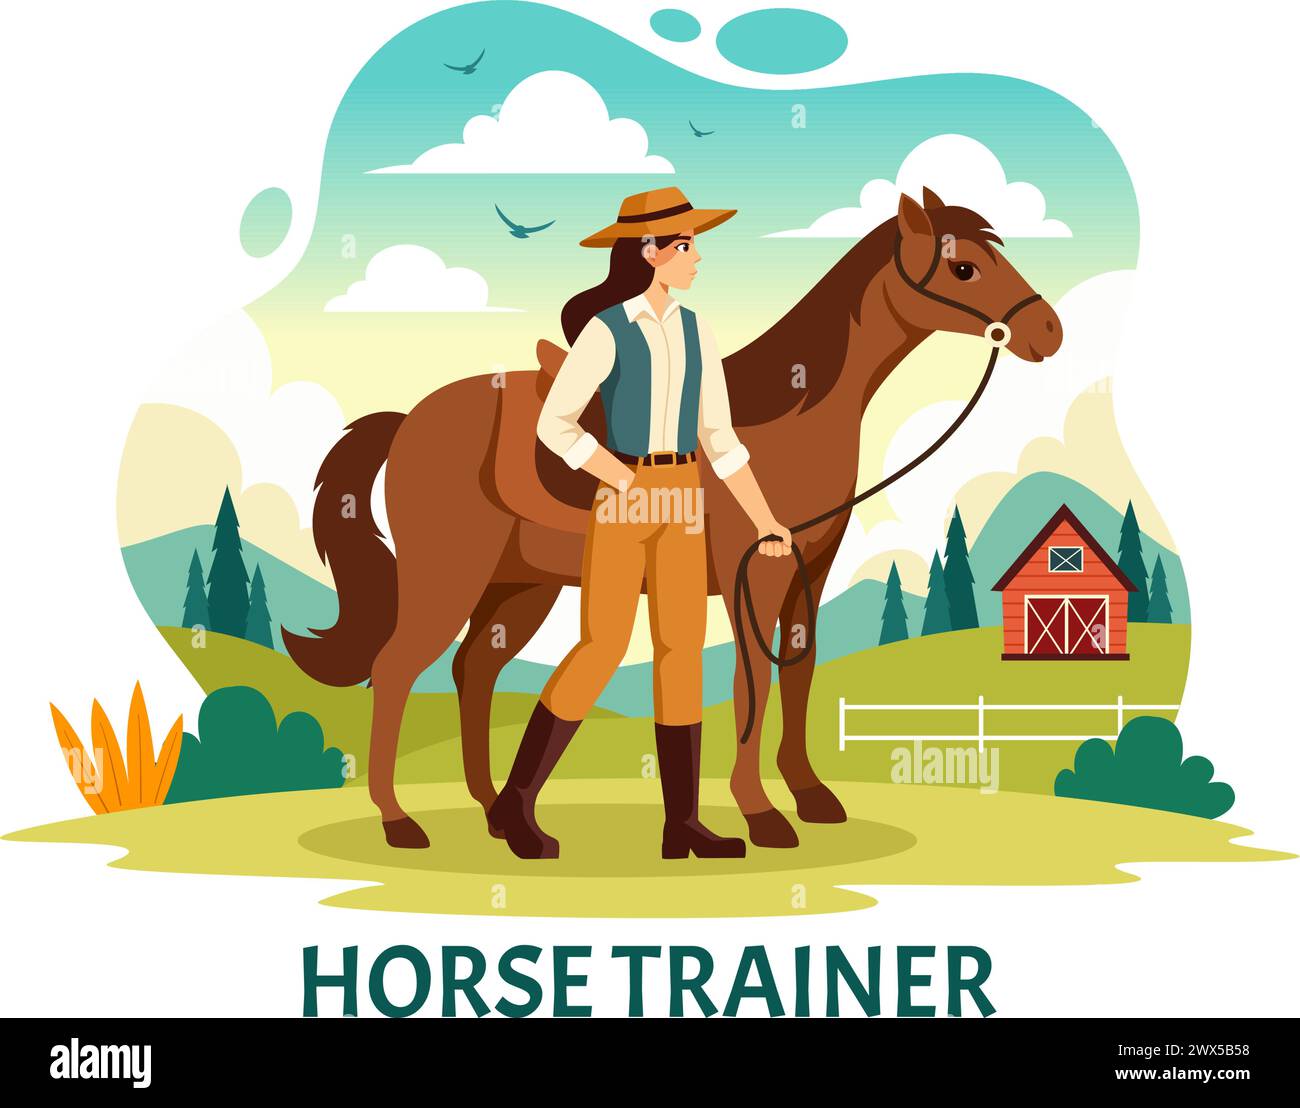 Equestrian Sport Horse Trainer illustration vectorielle avec formation, leçons d'équitation et chevaux de course dans Flat Cartoon fond Design Illustration de Vecteur